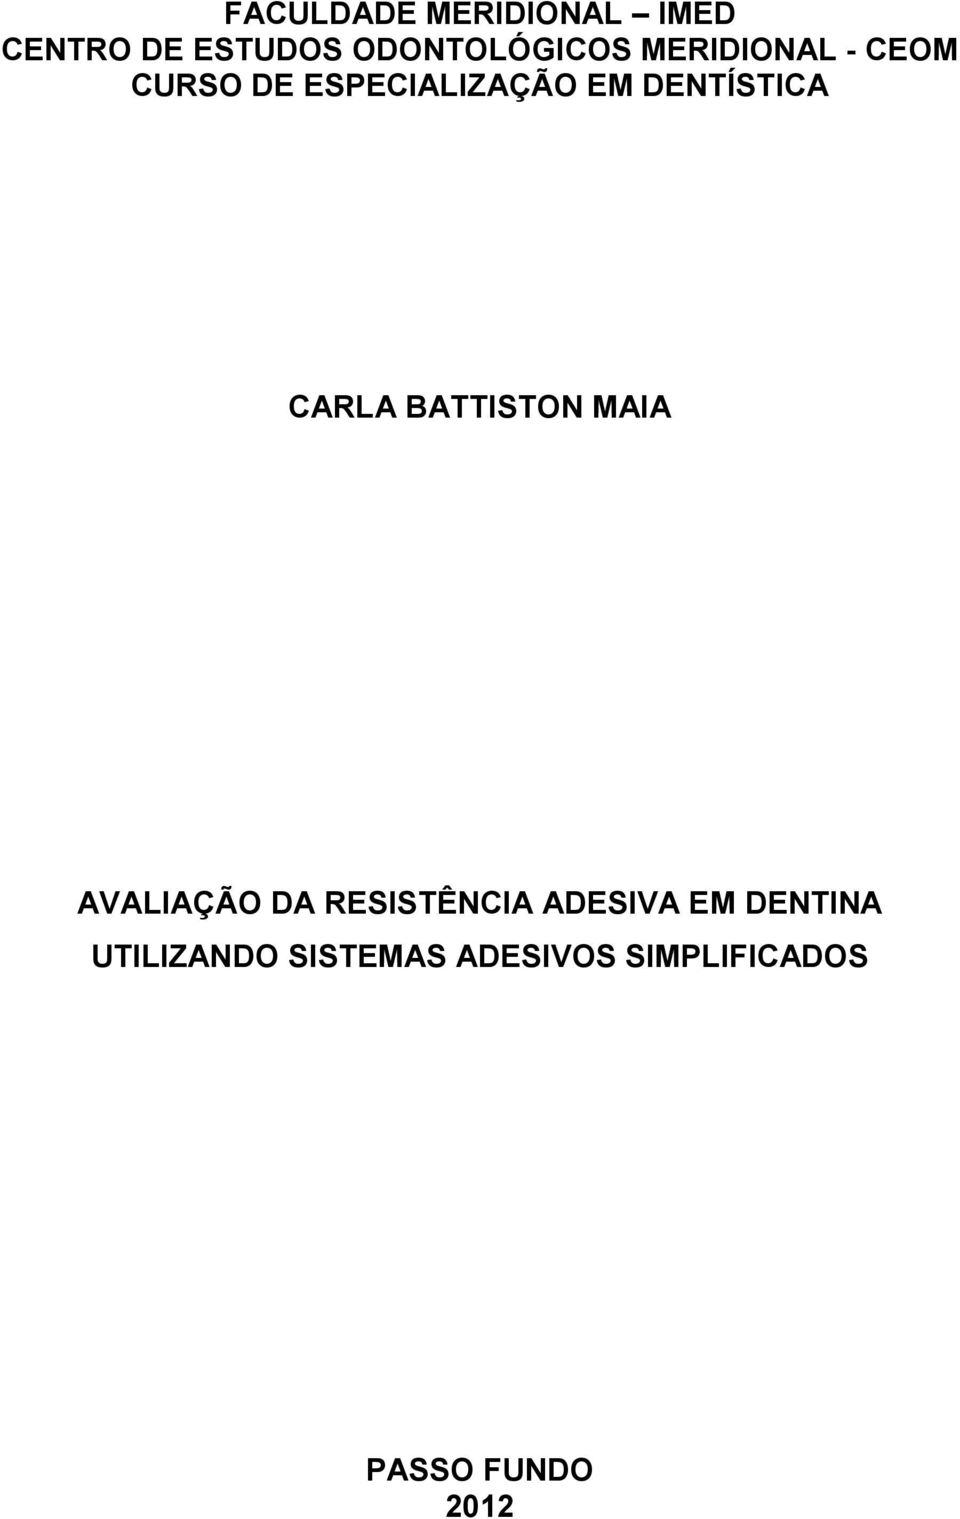 CARLA BATTISTON MAIA AVALIAÇÃO DA RESISTÊNCIA ADESIVA EM